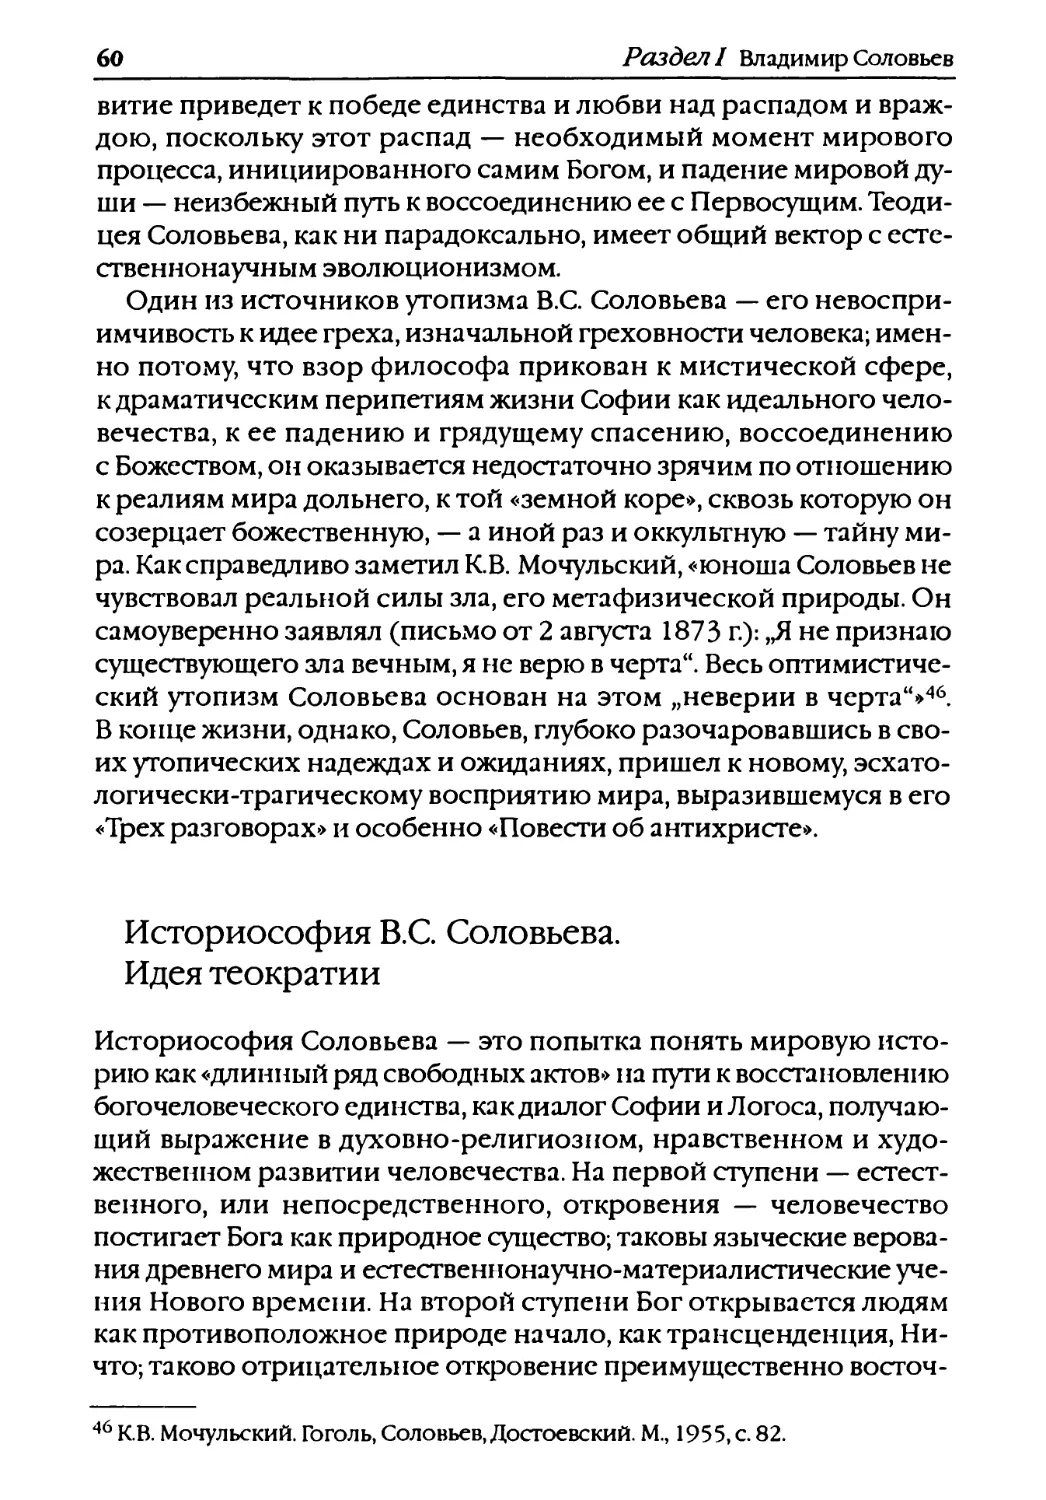 Историософия B.C. Соловьева. Идея теократии